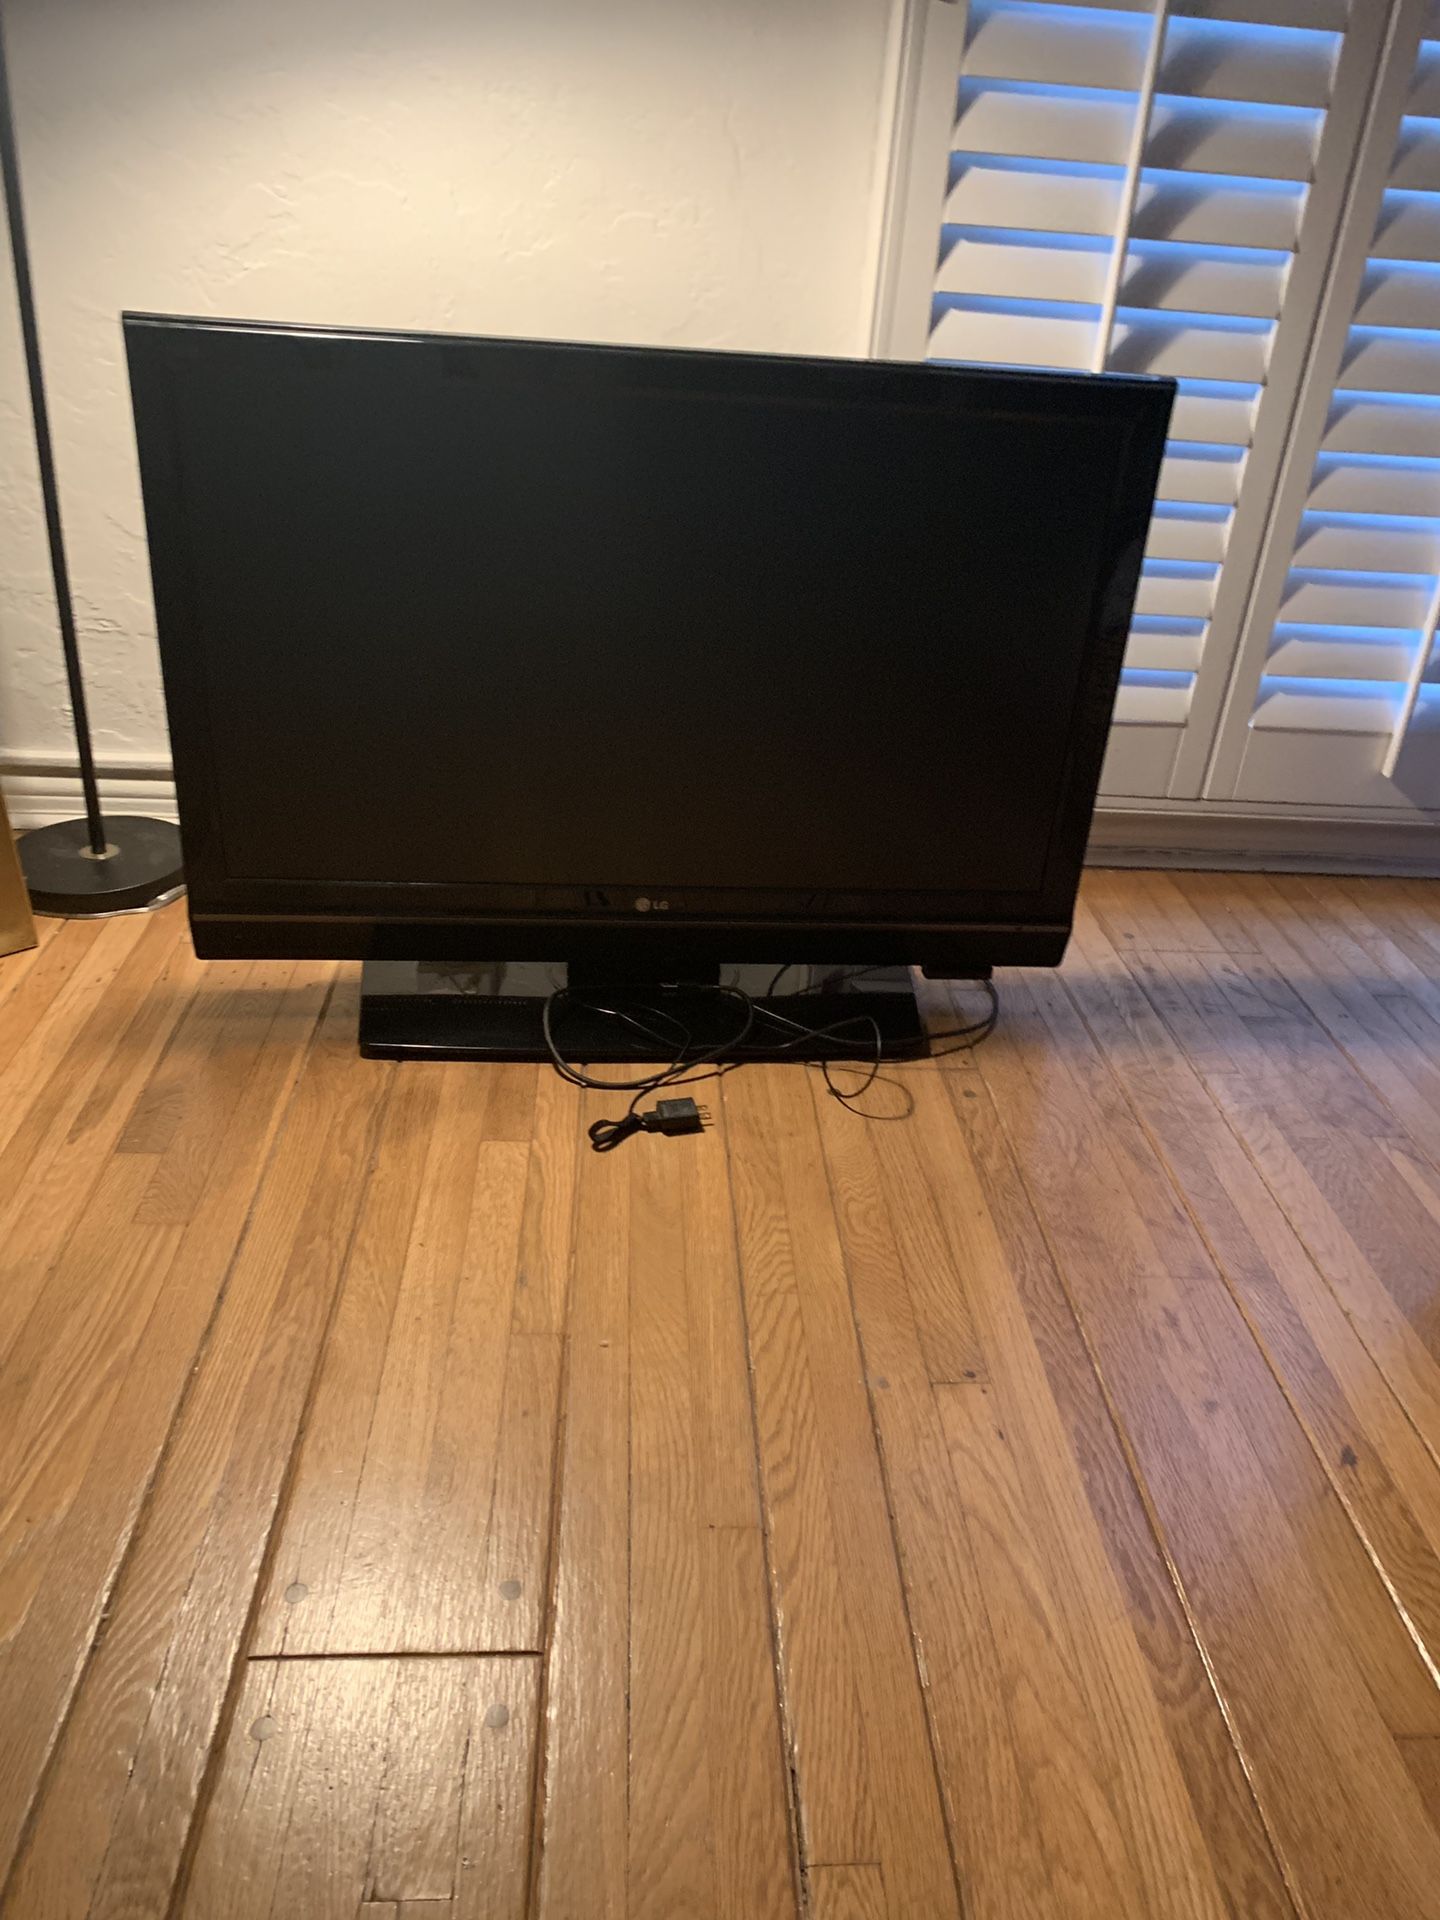 40 inch LG TV